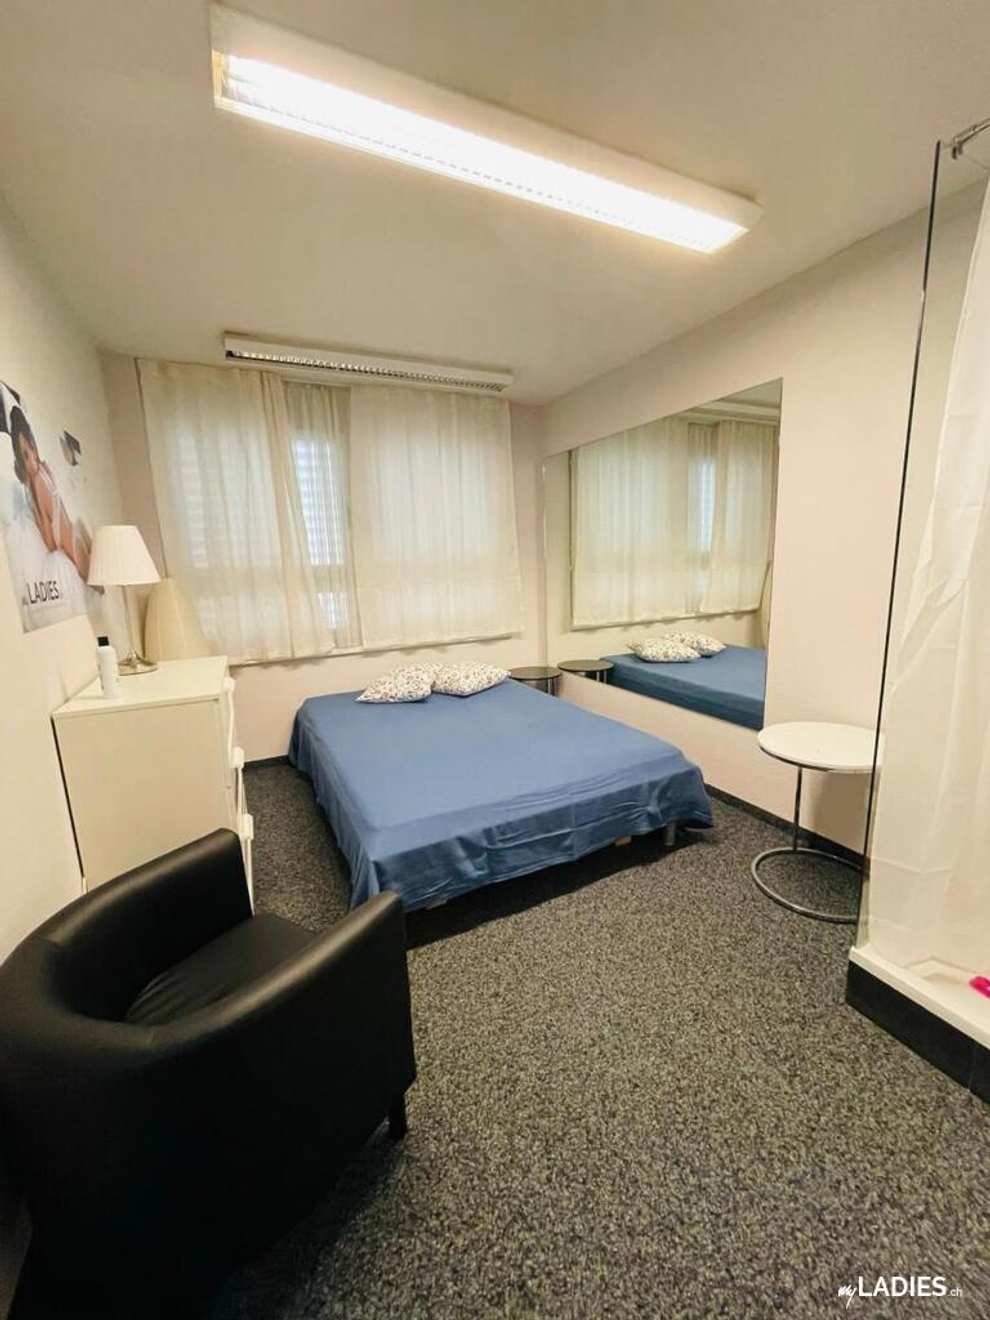 Zimmer / Rooms / Habitaciones in Baden Aargau / Bild 3